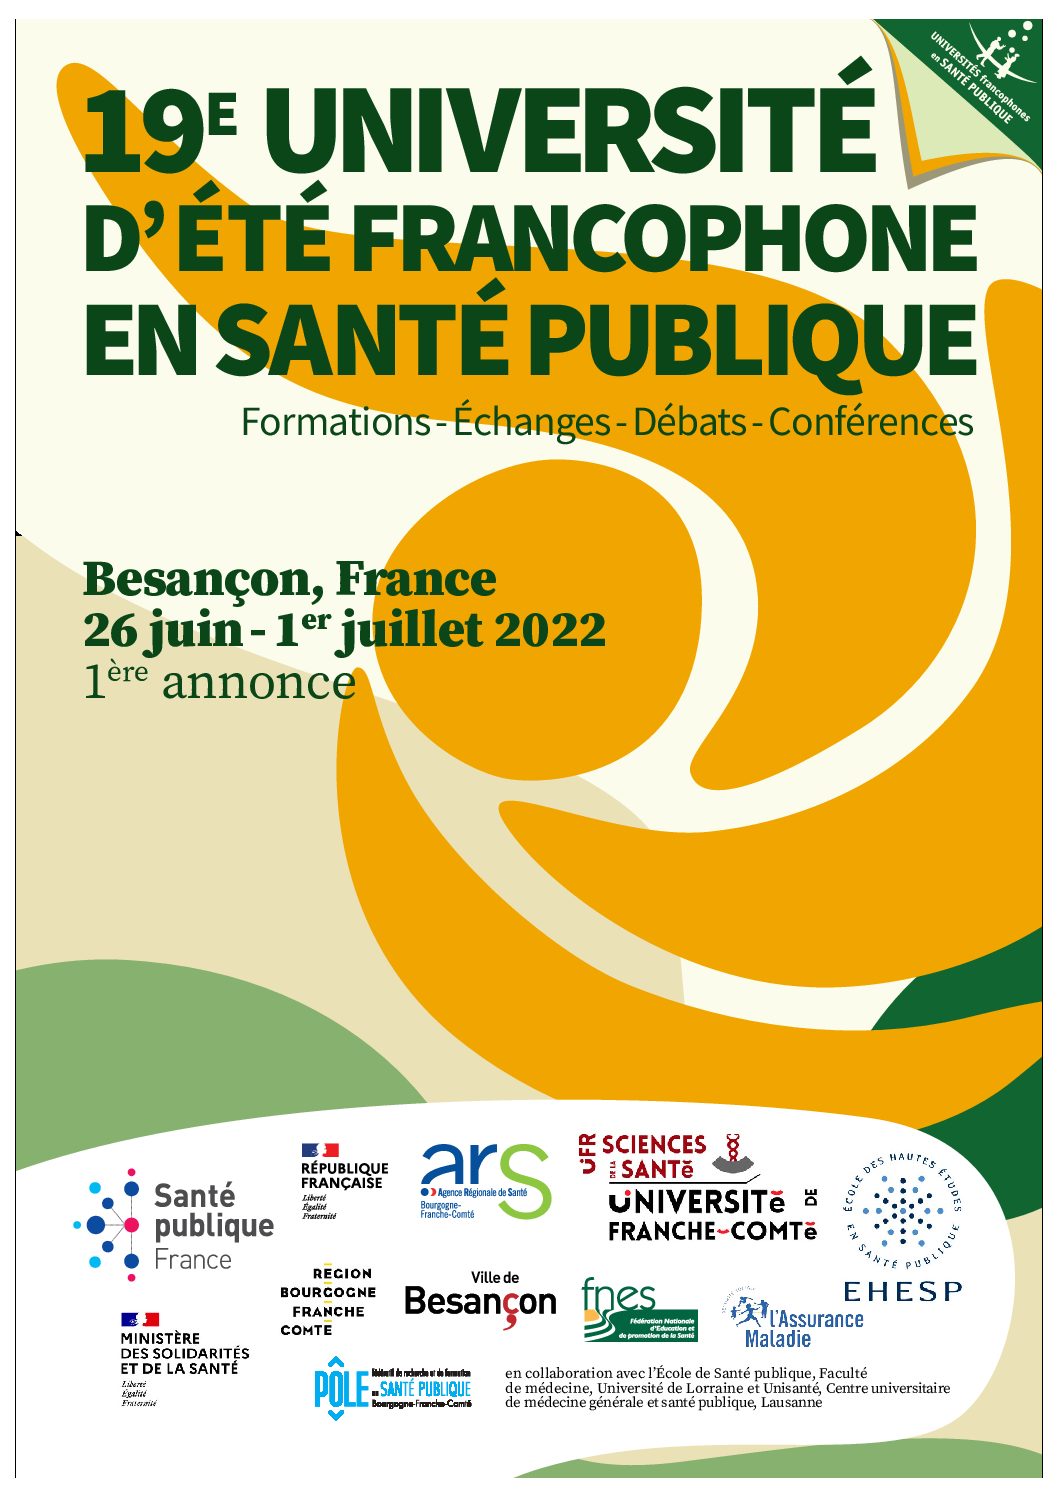 19ème Université d’été francophone en santé publique  |  03 au 08 juillet 2022  |  Besançon